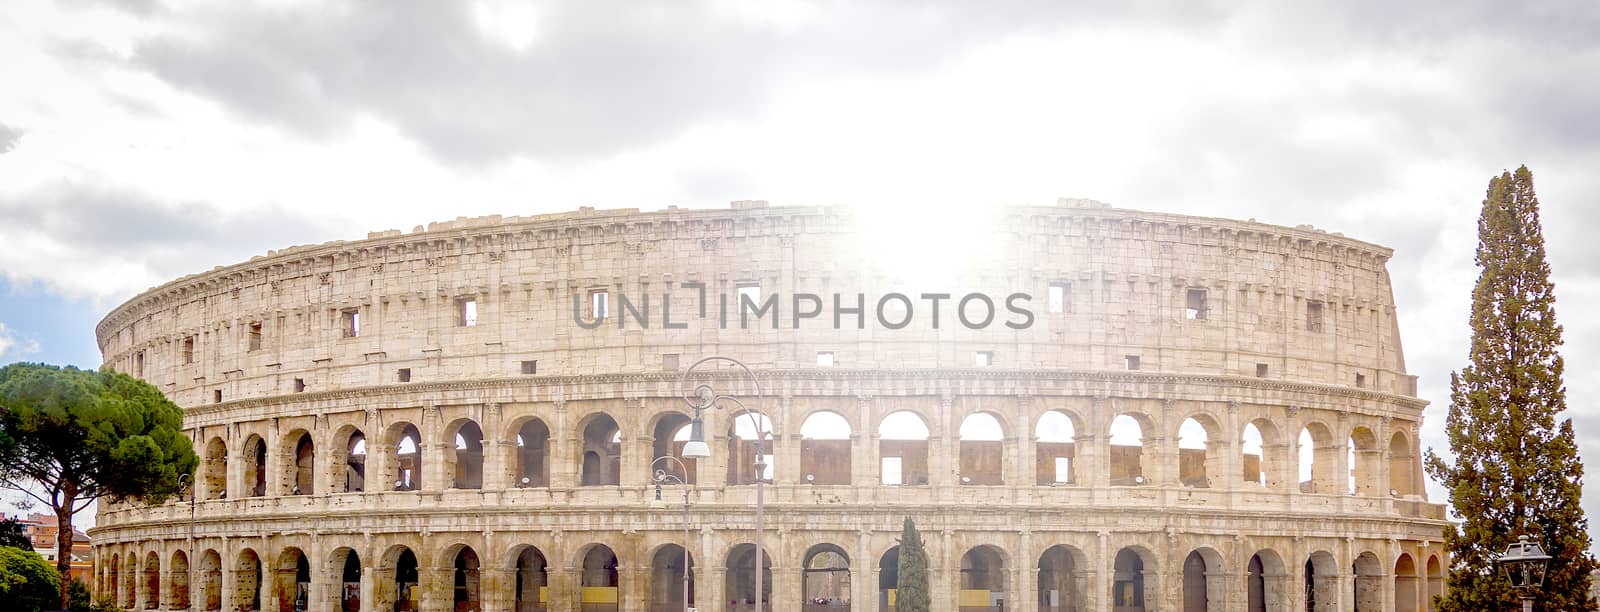 view of the Colosseum in Rome by rarrarorro